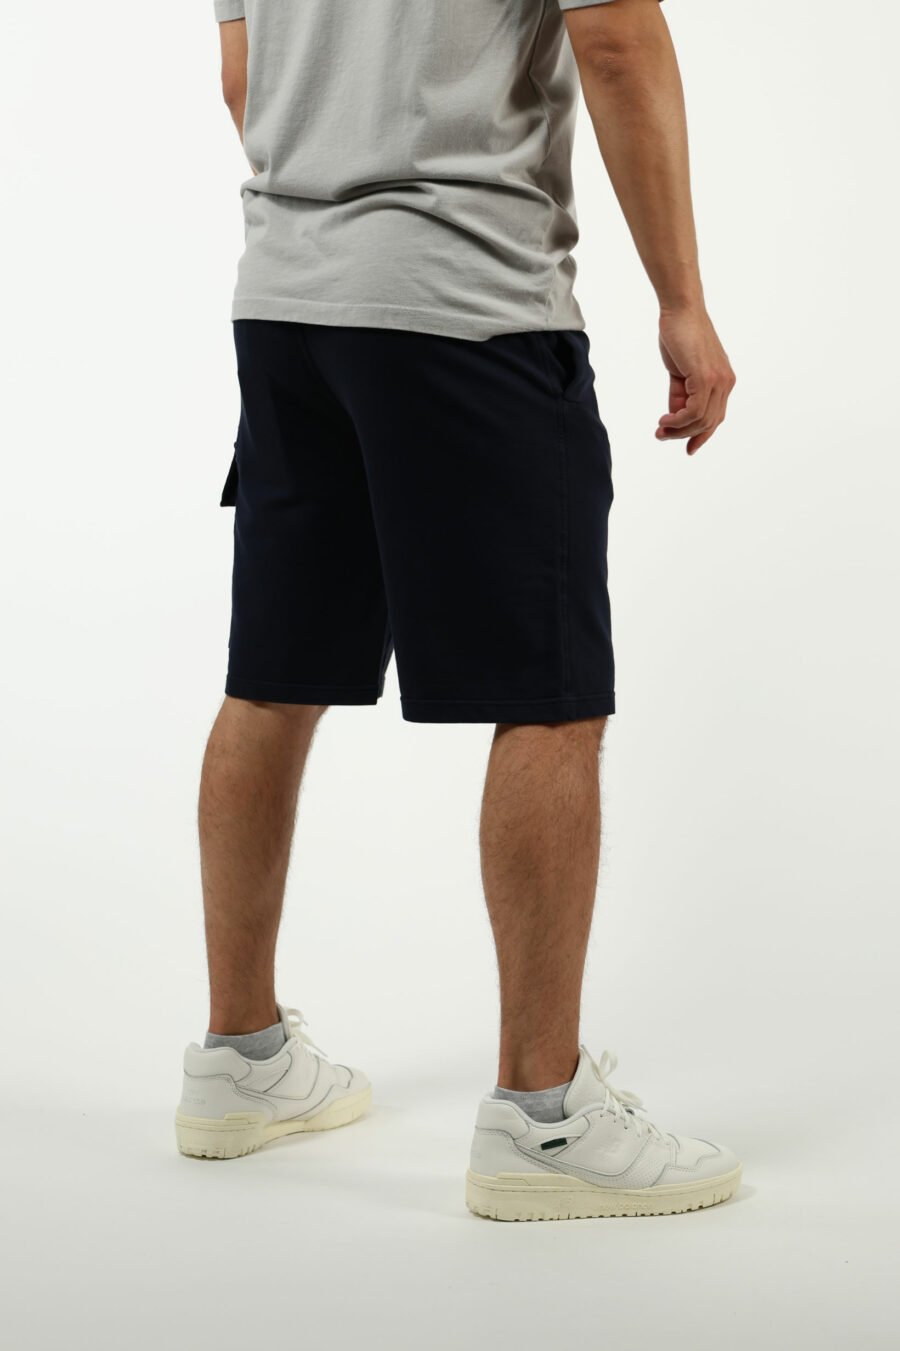 Pantalón de chándal corto azul oscuro estilo cargo con logo lente - number13475